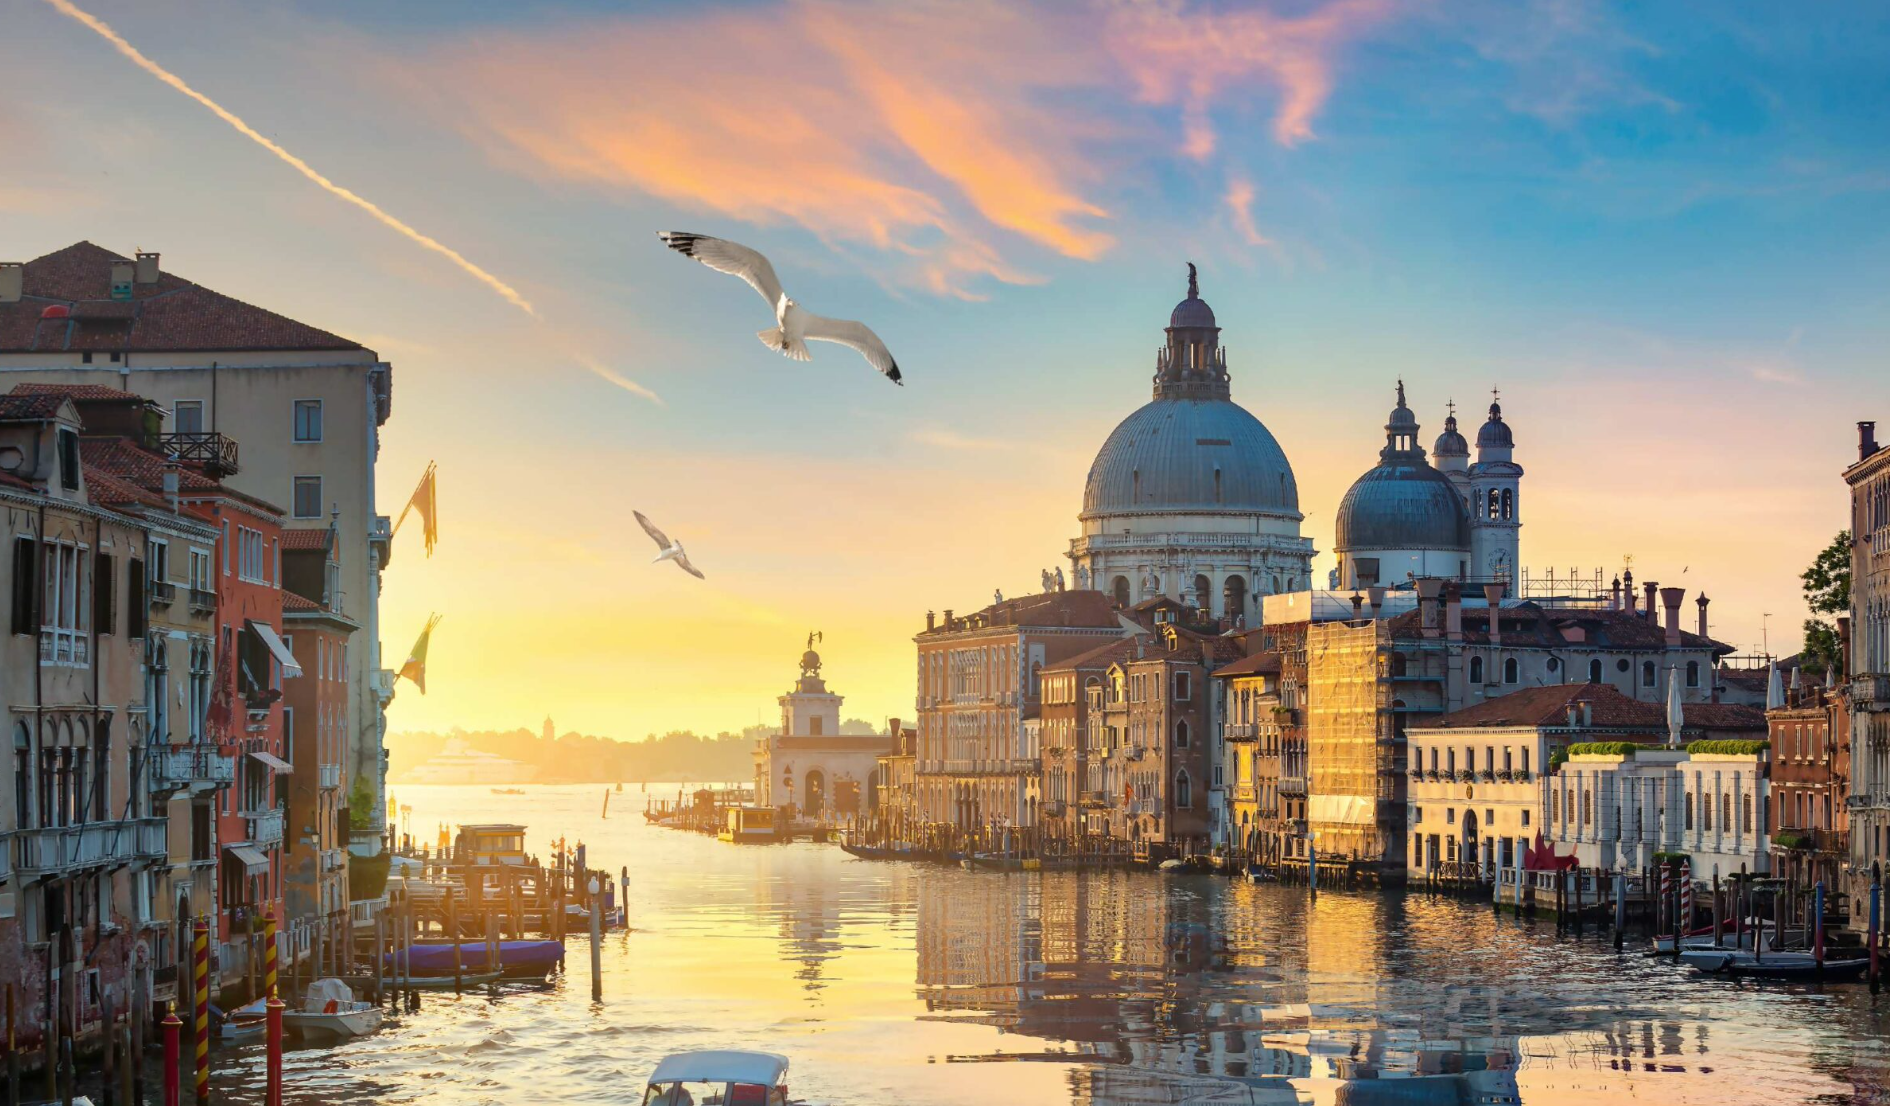 Venecia empieza a combatir el turismo masivo